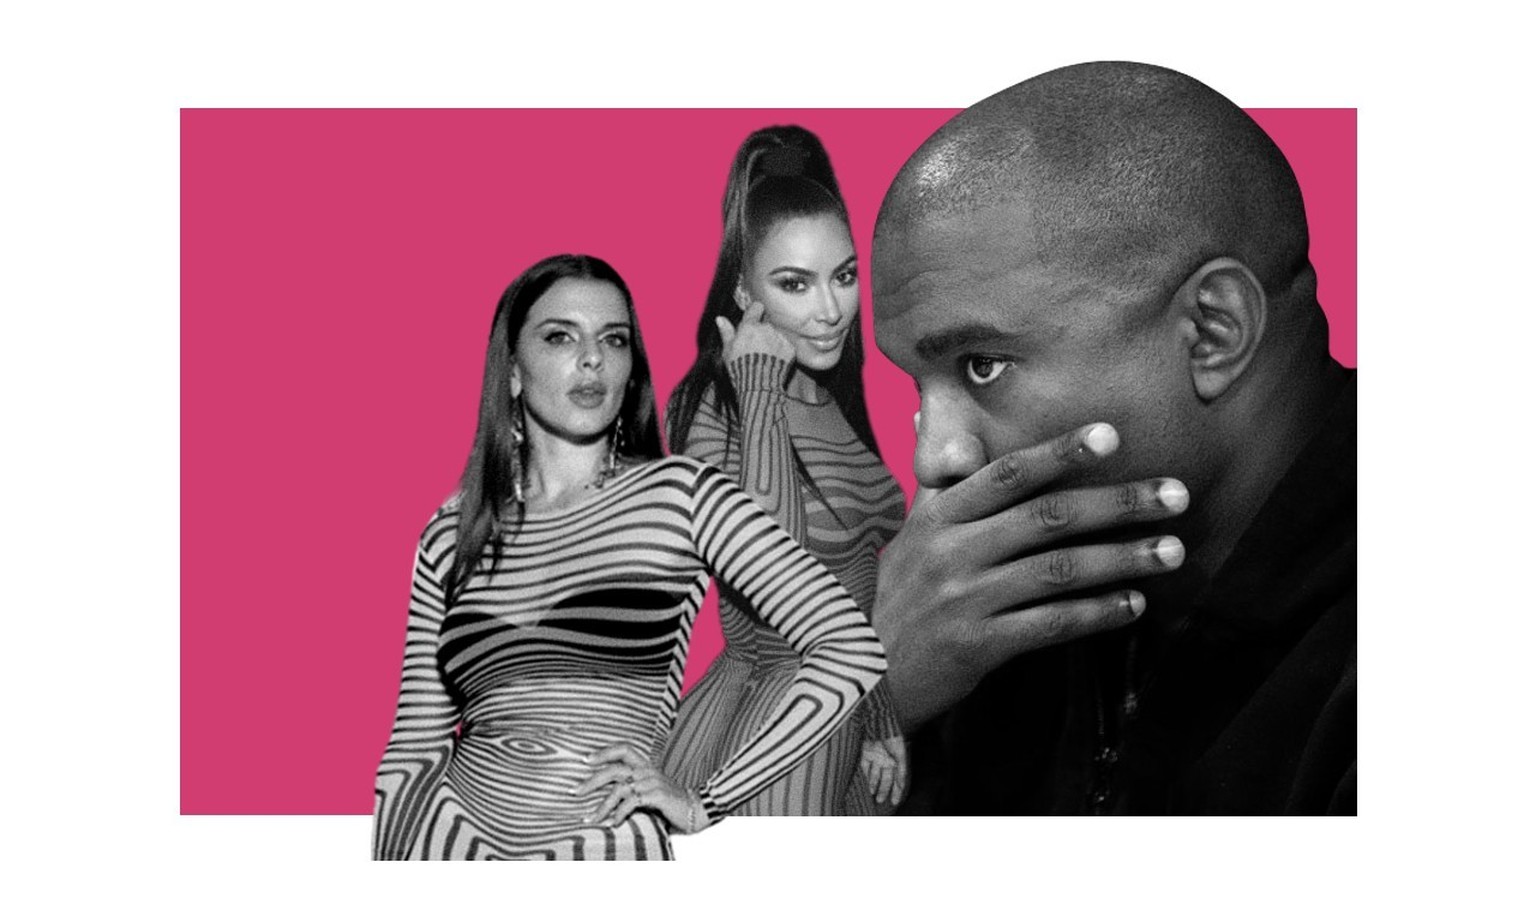 Vanity Fair a demandé à Julia Fox si elle pensait que Kim Kardashian, l'ex-femme de son ancien compagnon Kanye West, avait été «inspirée» par son style.